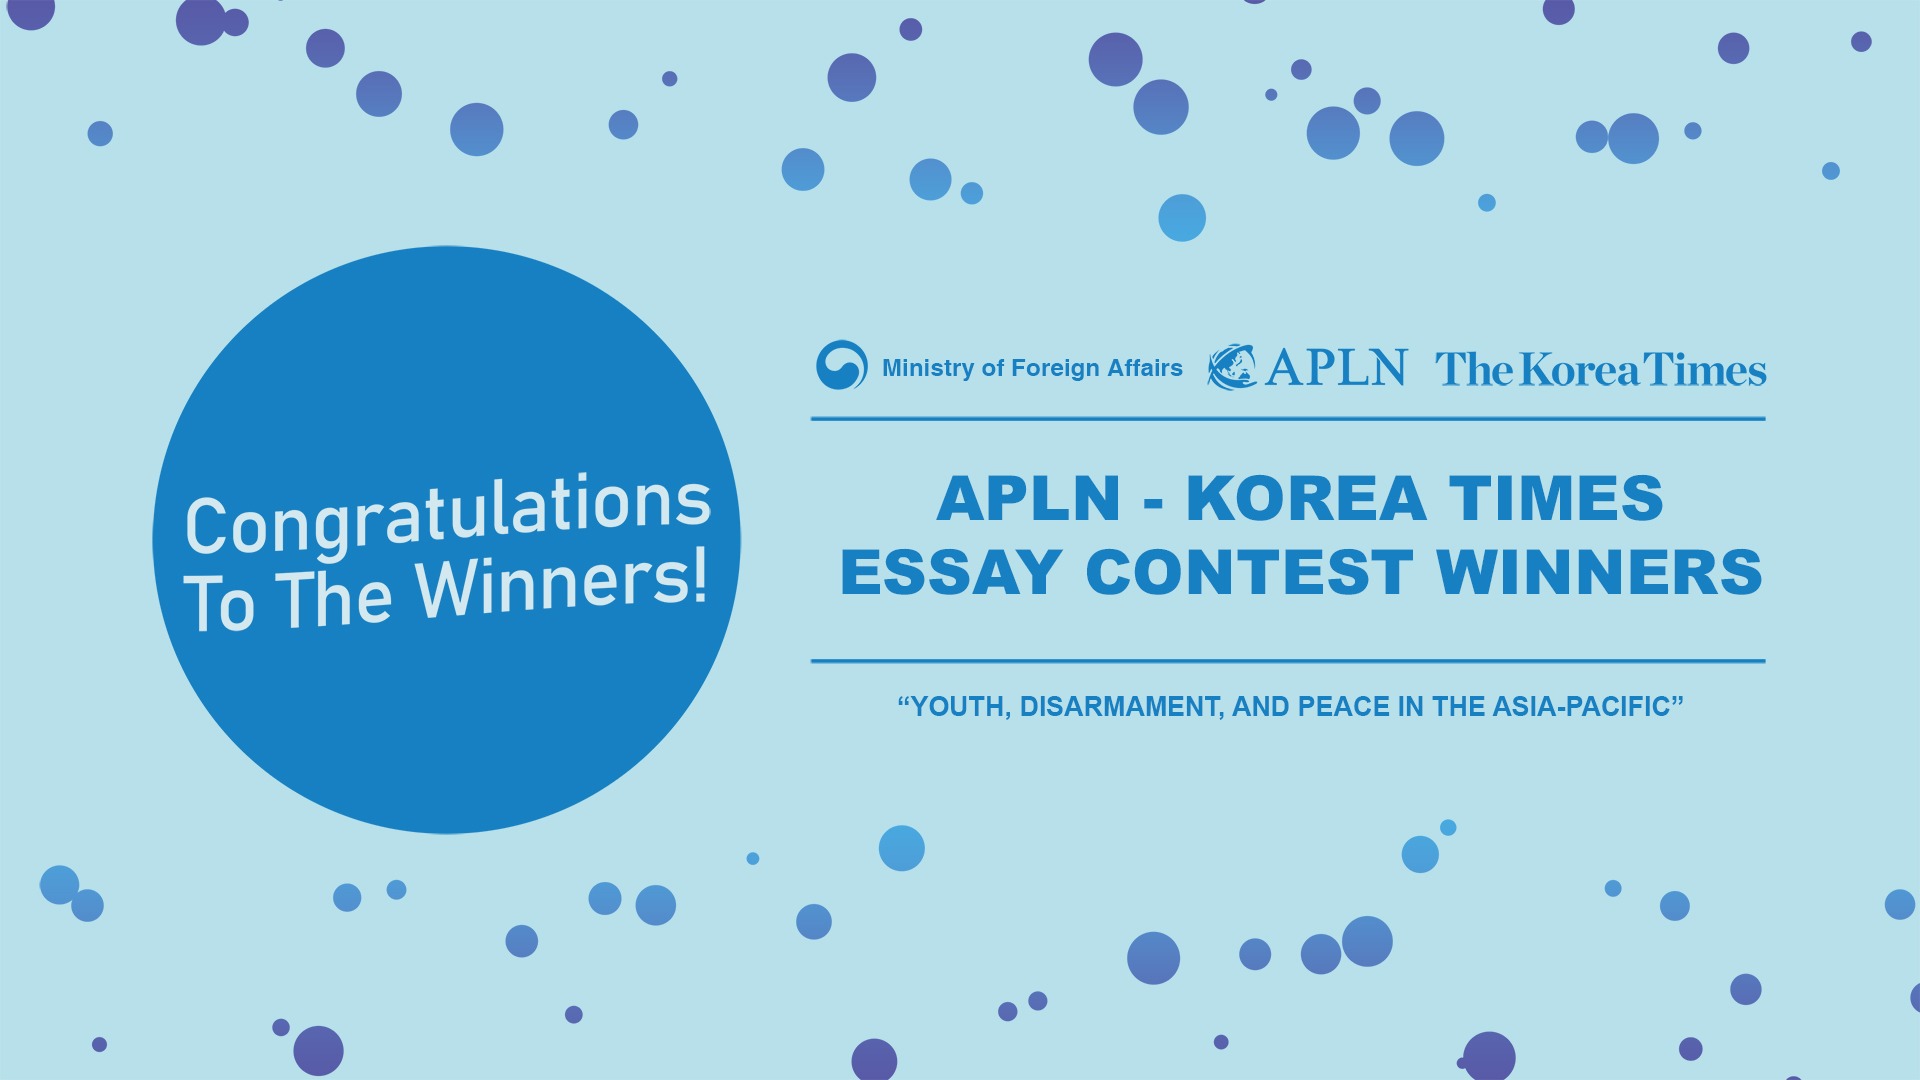 The APLN – Korea Times Essay Contest 2021